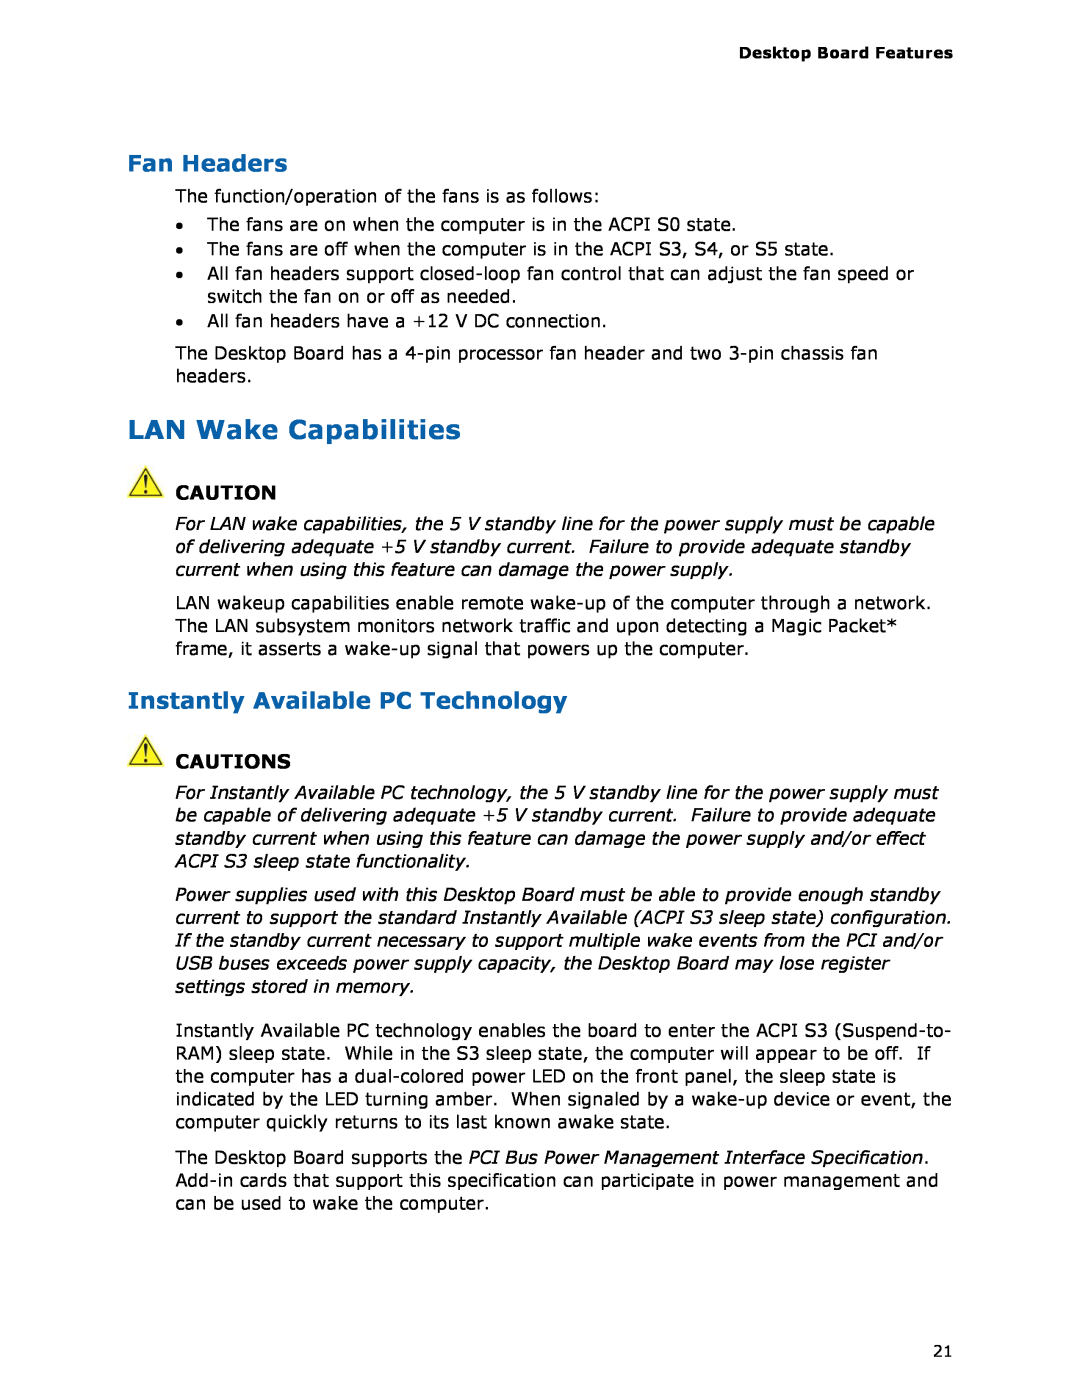 Intel DG35EC, Intel Desktop Board manual LAN Wake Capabilities, Fan Headers, Instantly Available PC Technology, Cautions 